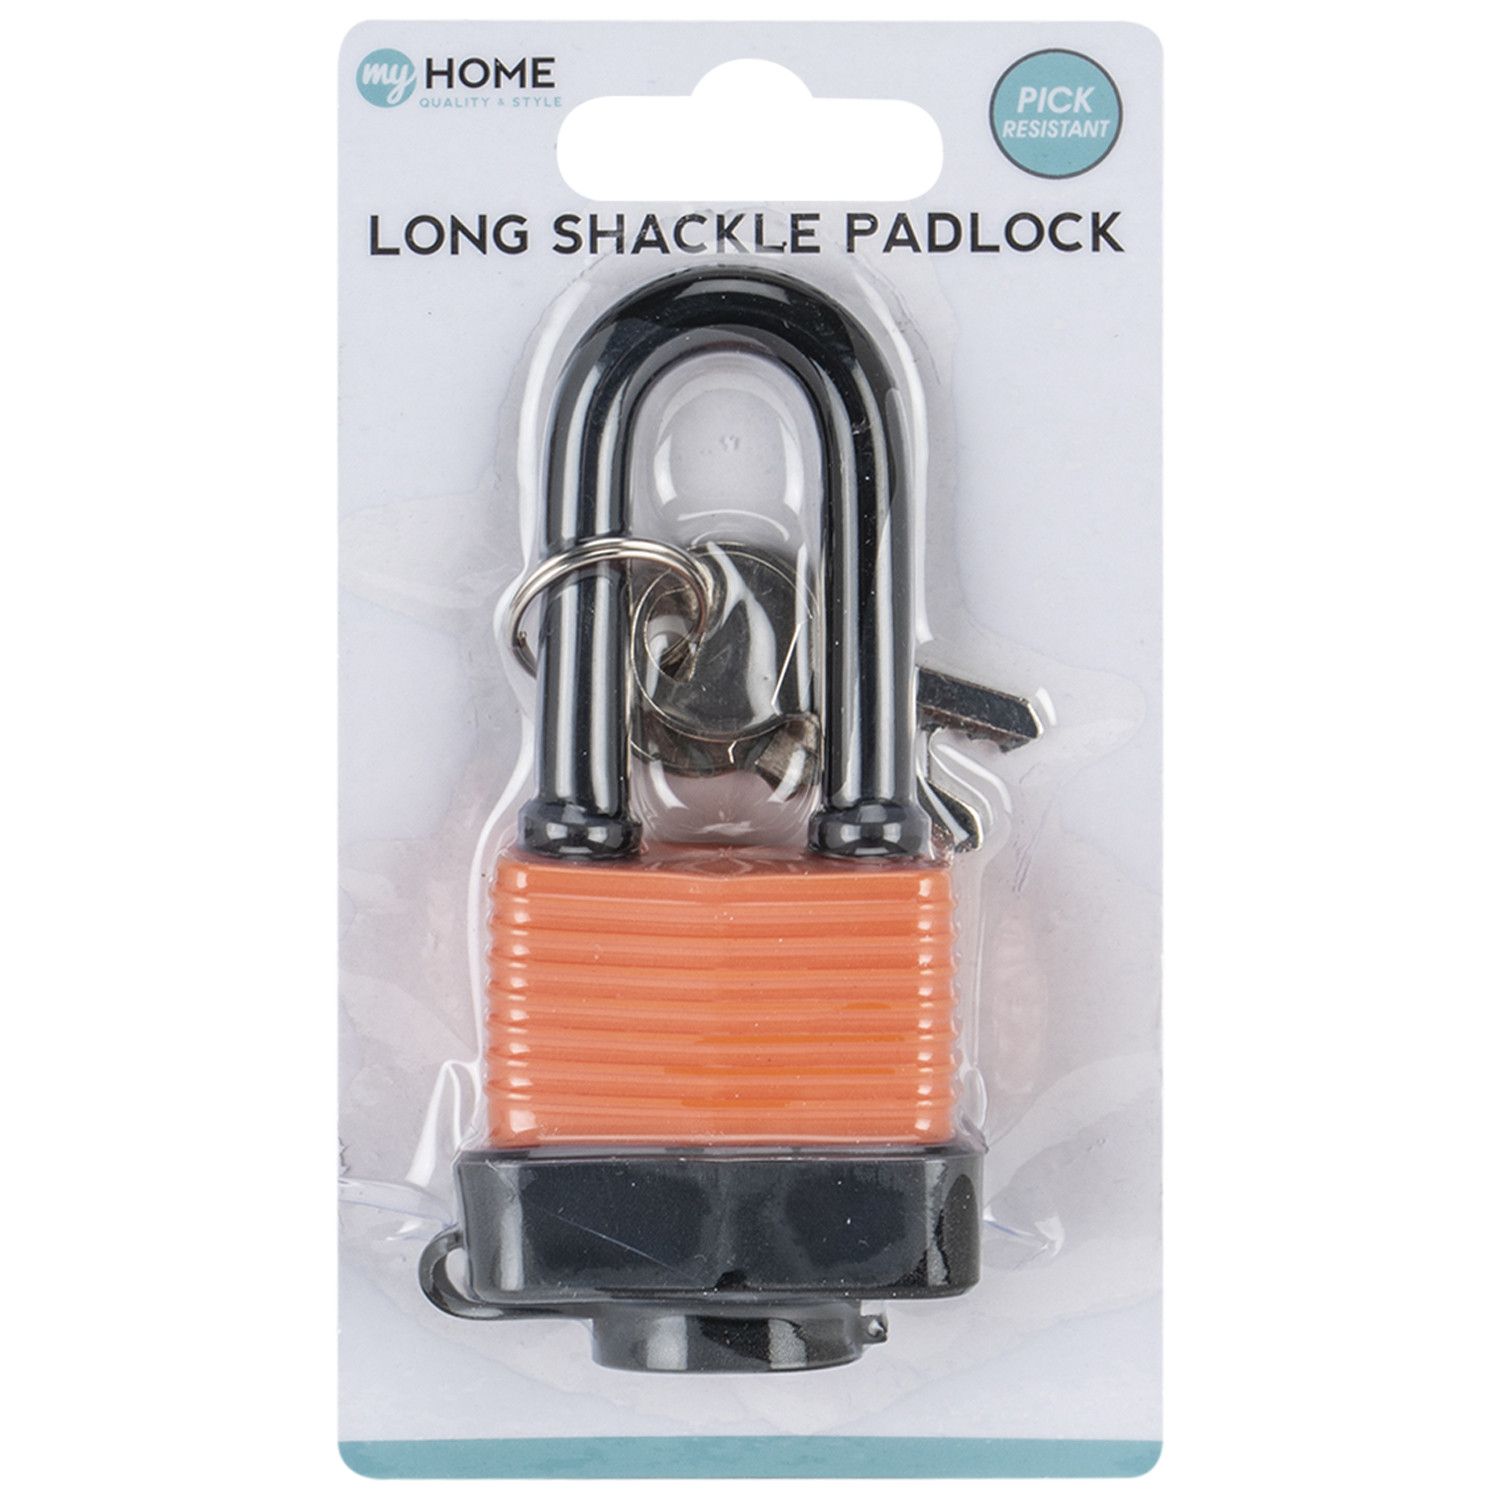 My Home 105mm Long Shackle Waterproof Padlock with 2 Keys Image